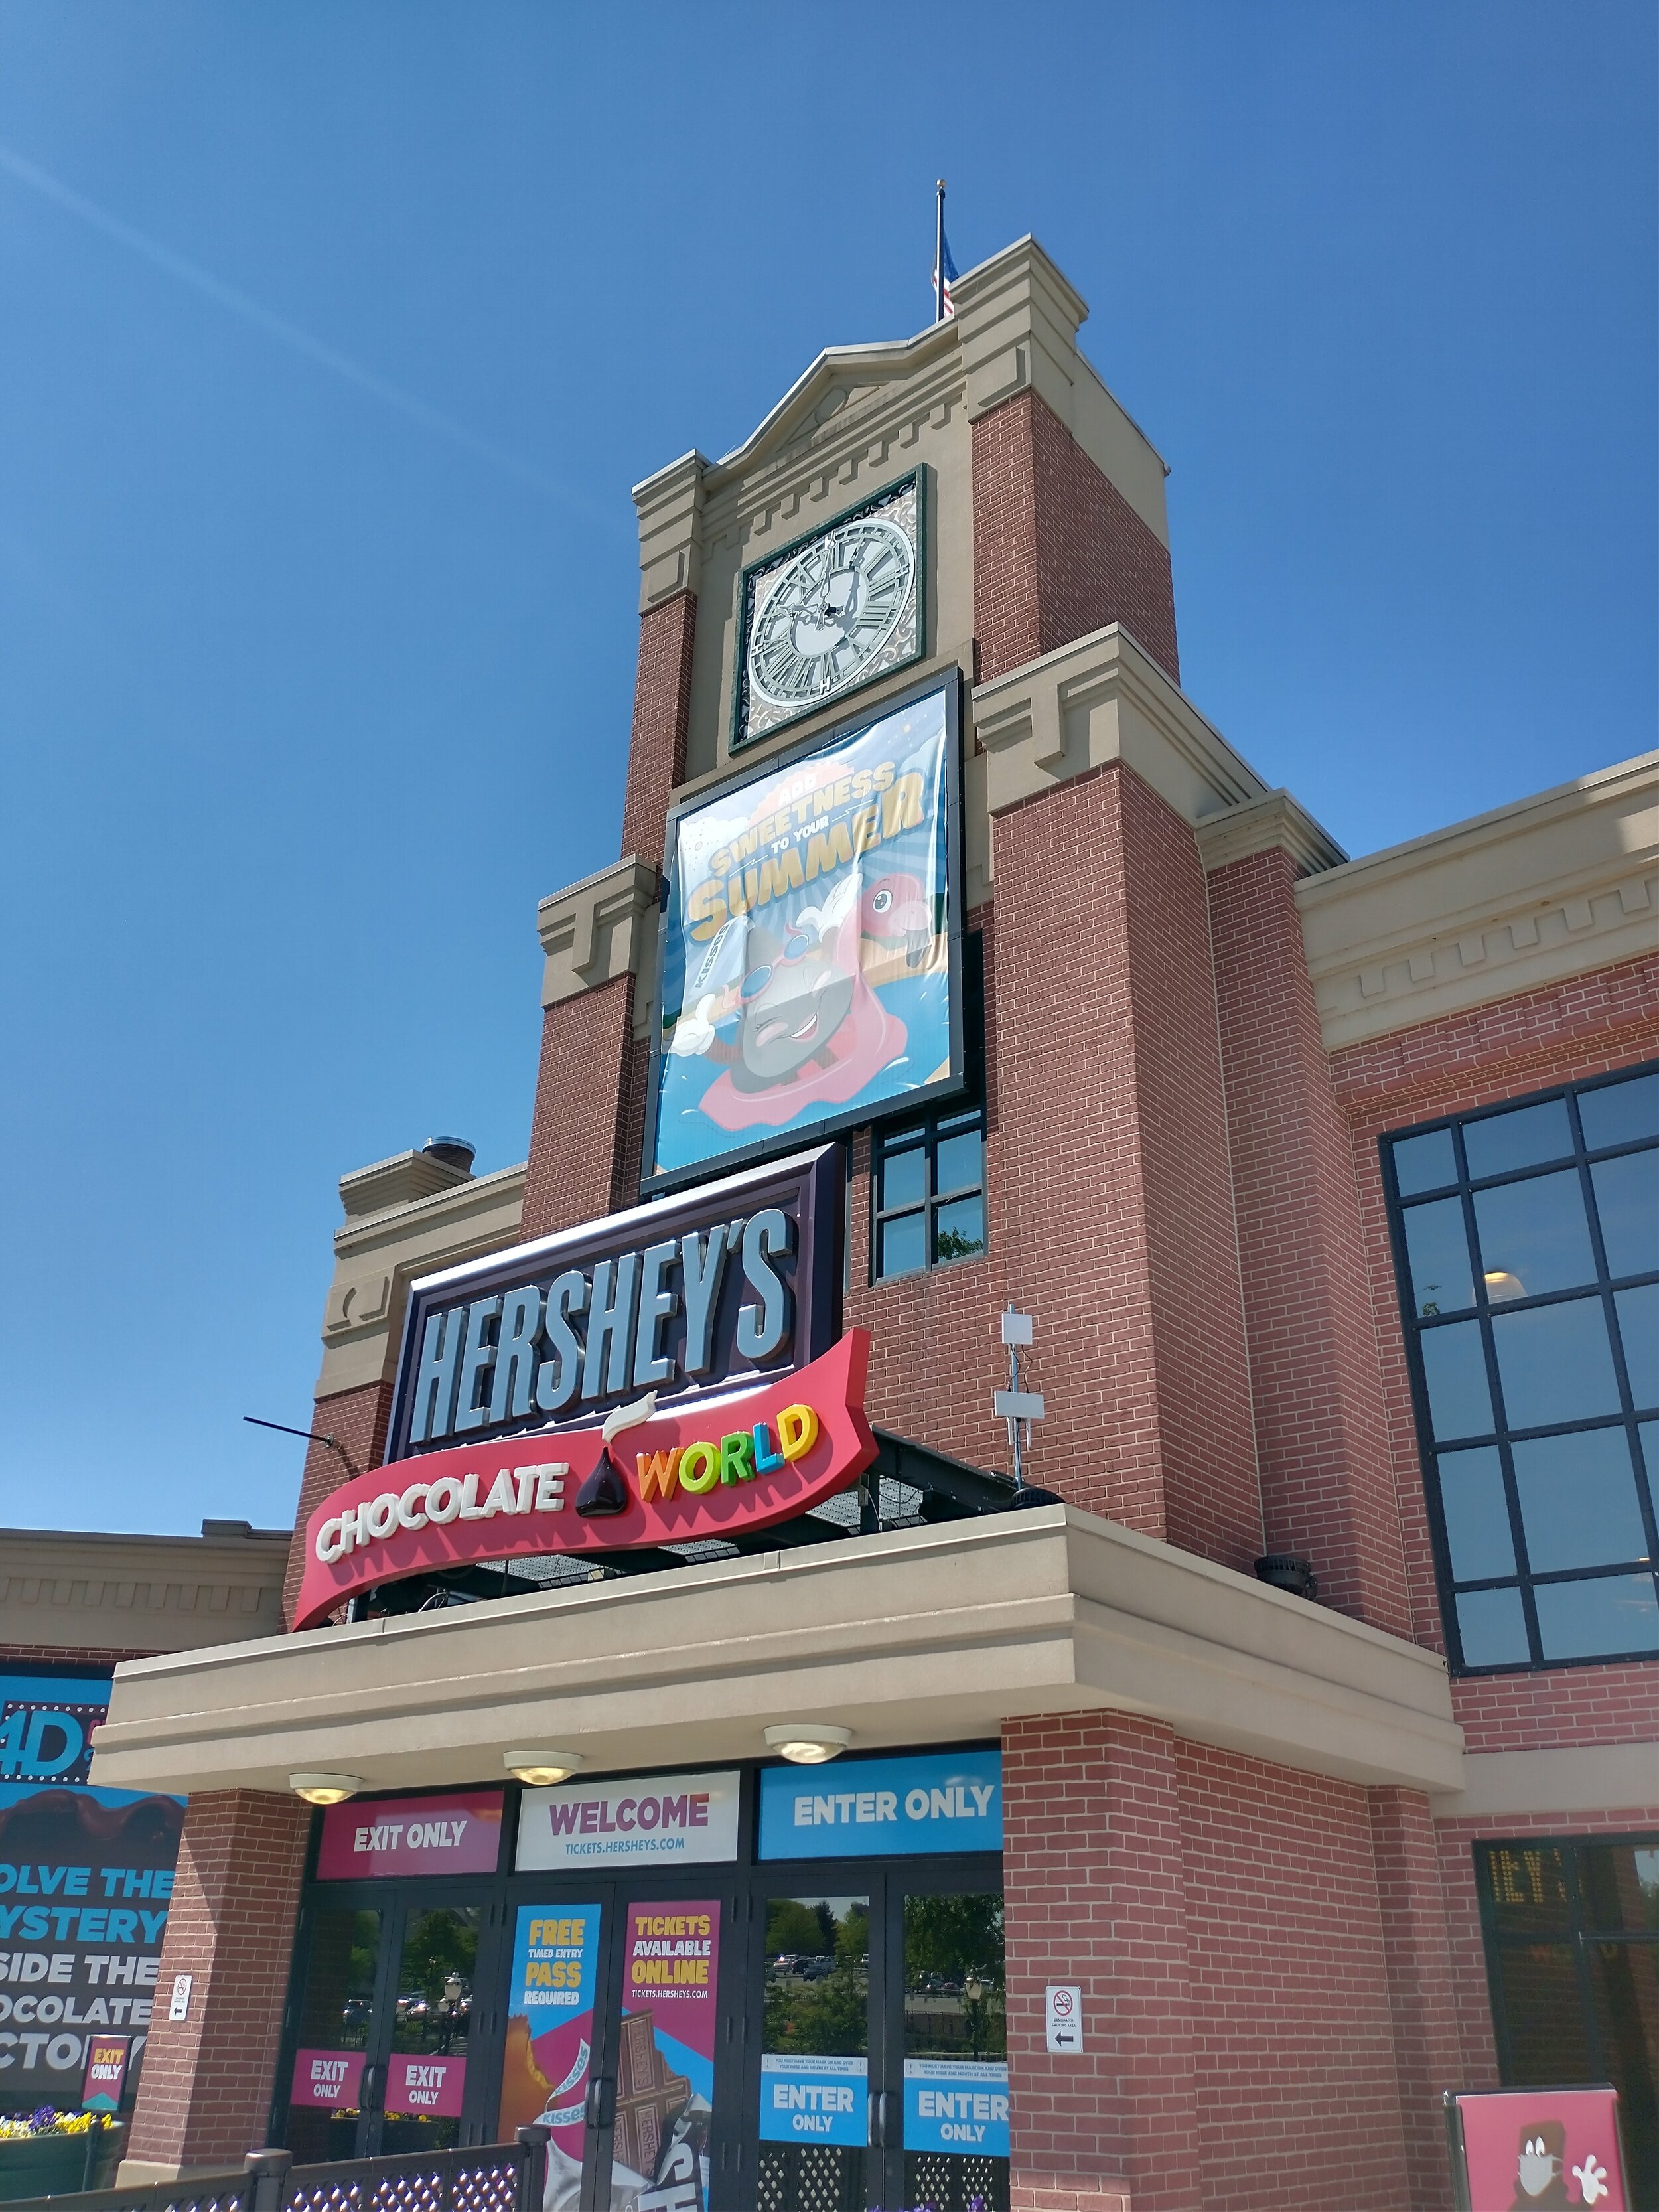 Herhsey's Chocolate World.jpg